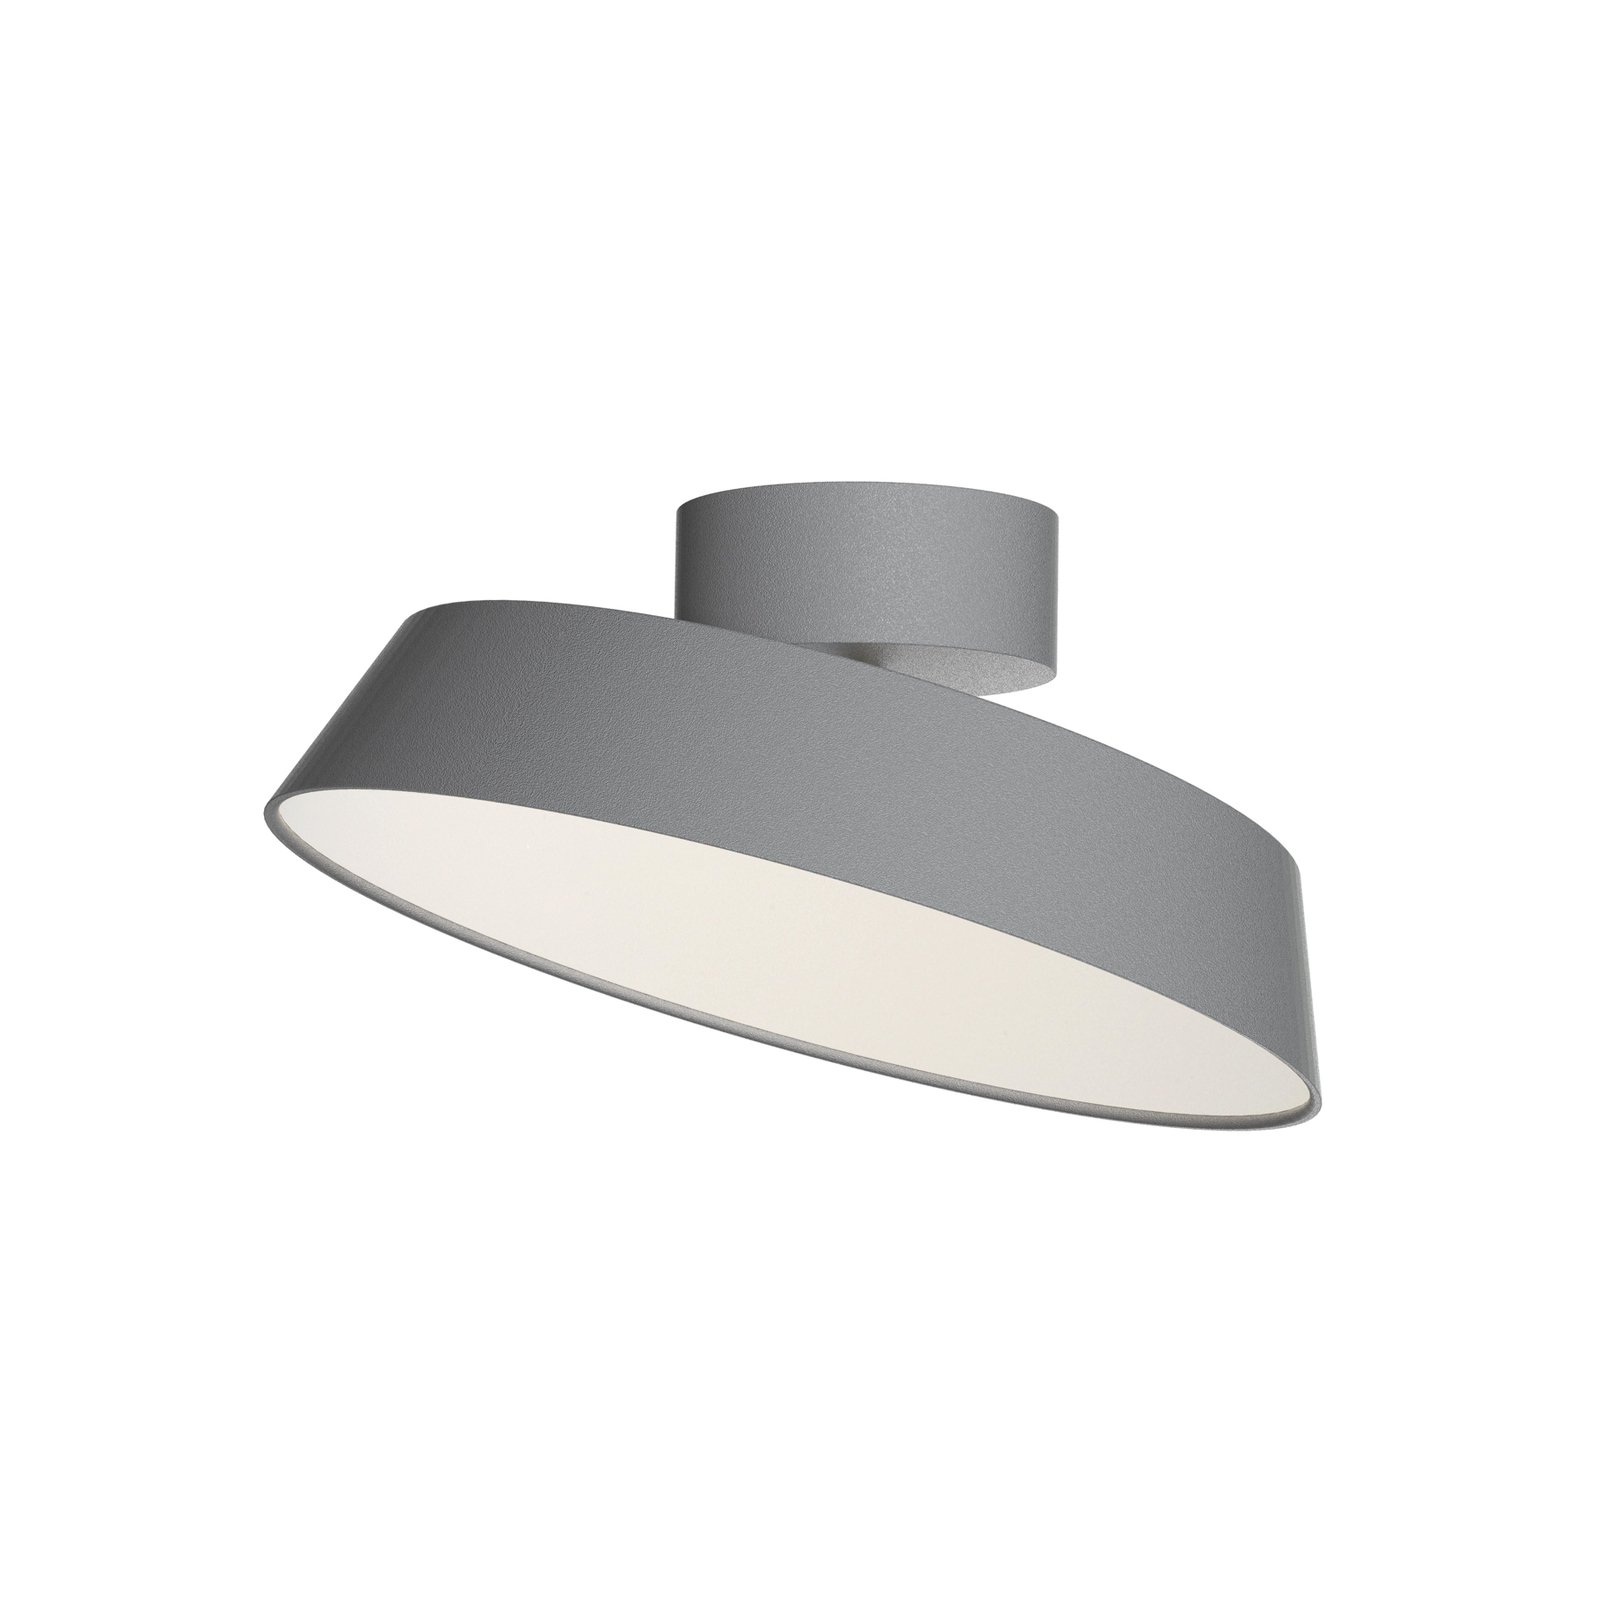 LED stropna svetilka Kaito 2 Dim, siva, Ø 30 cm, z možnostjo zatemnitve